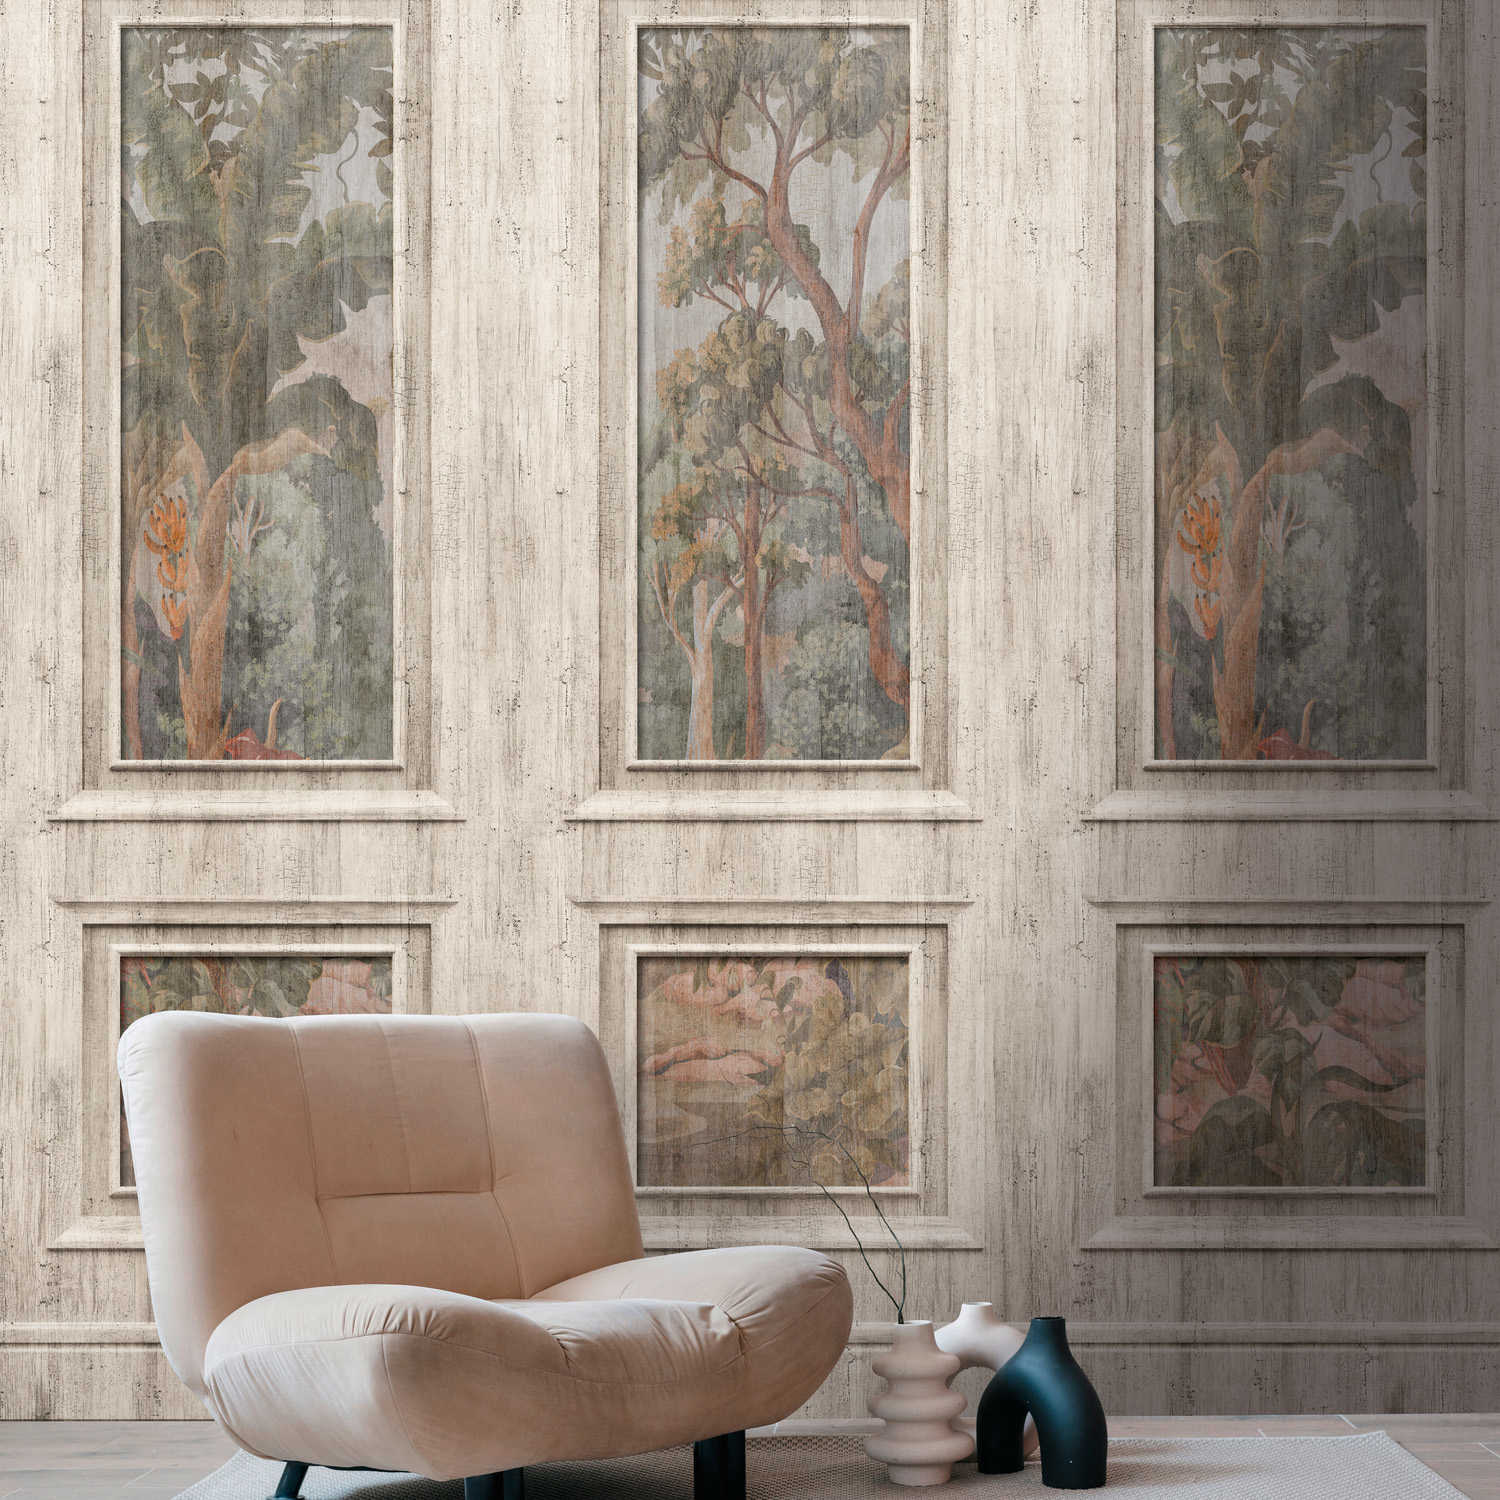 Vliesbehang met dambord- en bosmotief in vintagelook - grijs, beige
